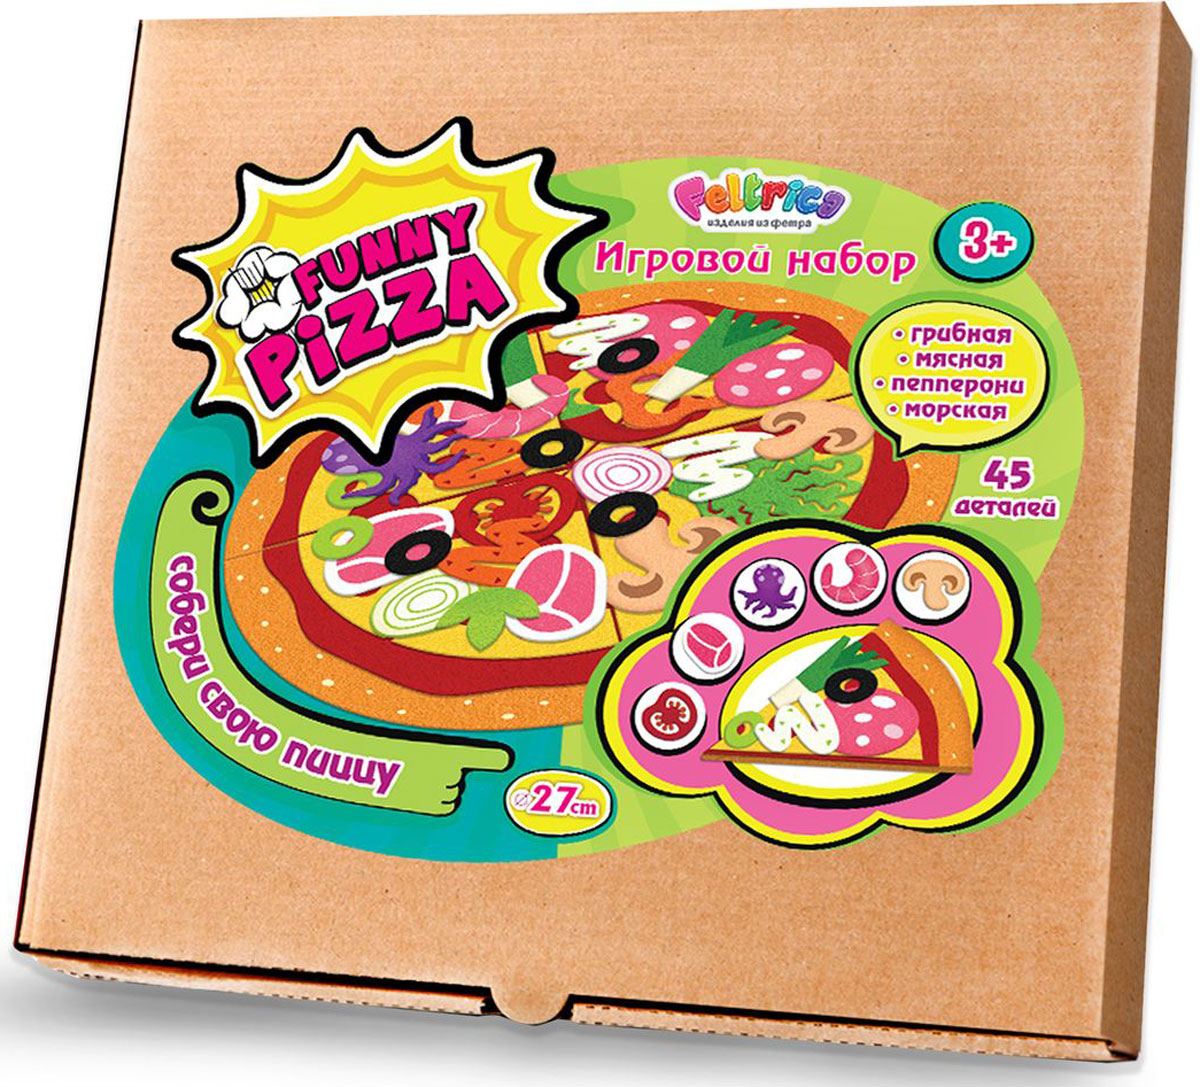 Feltrica Набор для 3D моделирования Пицца из фетра